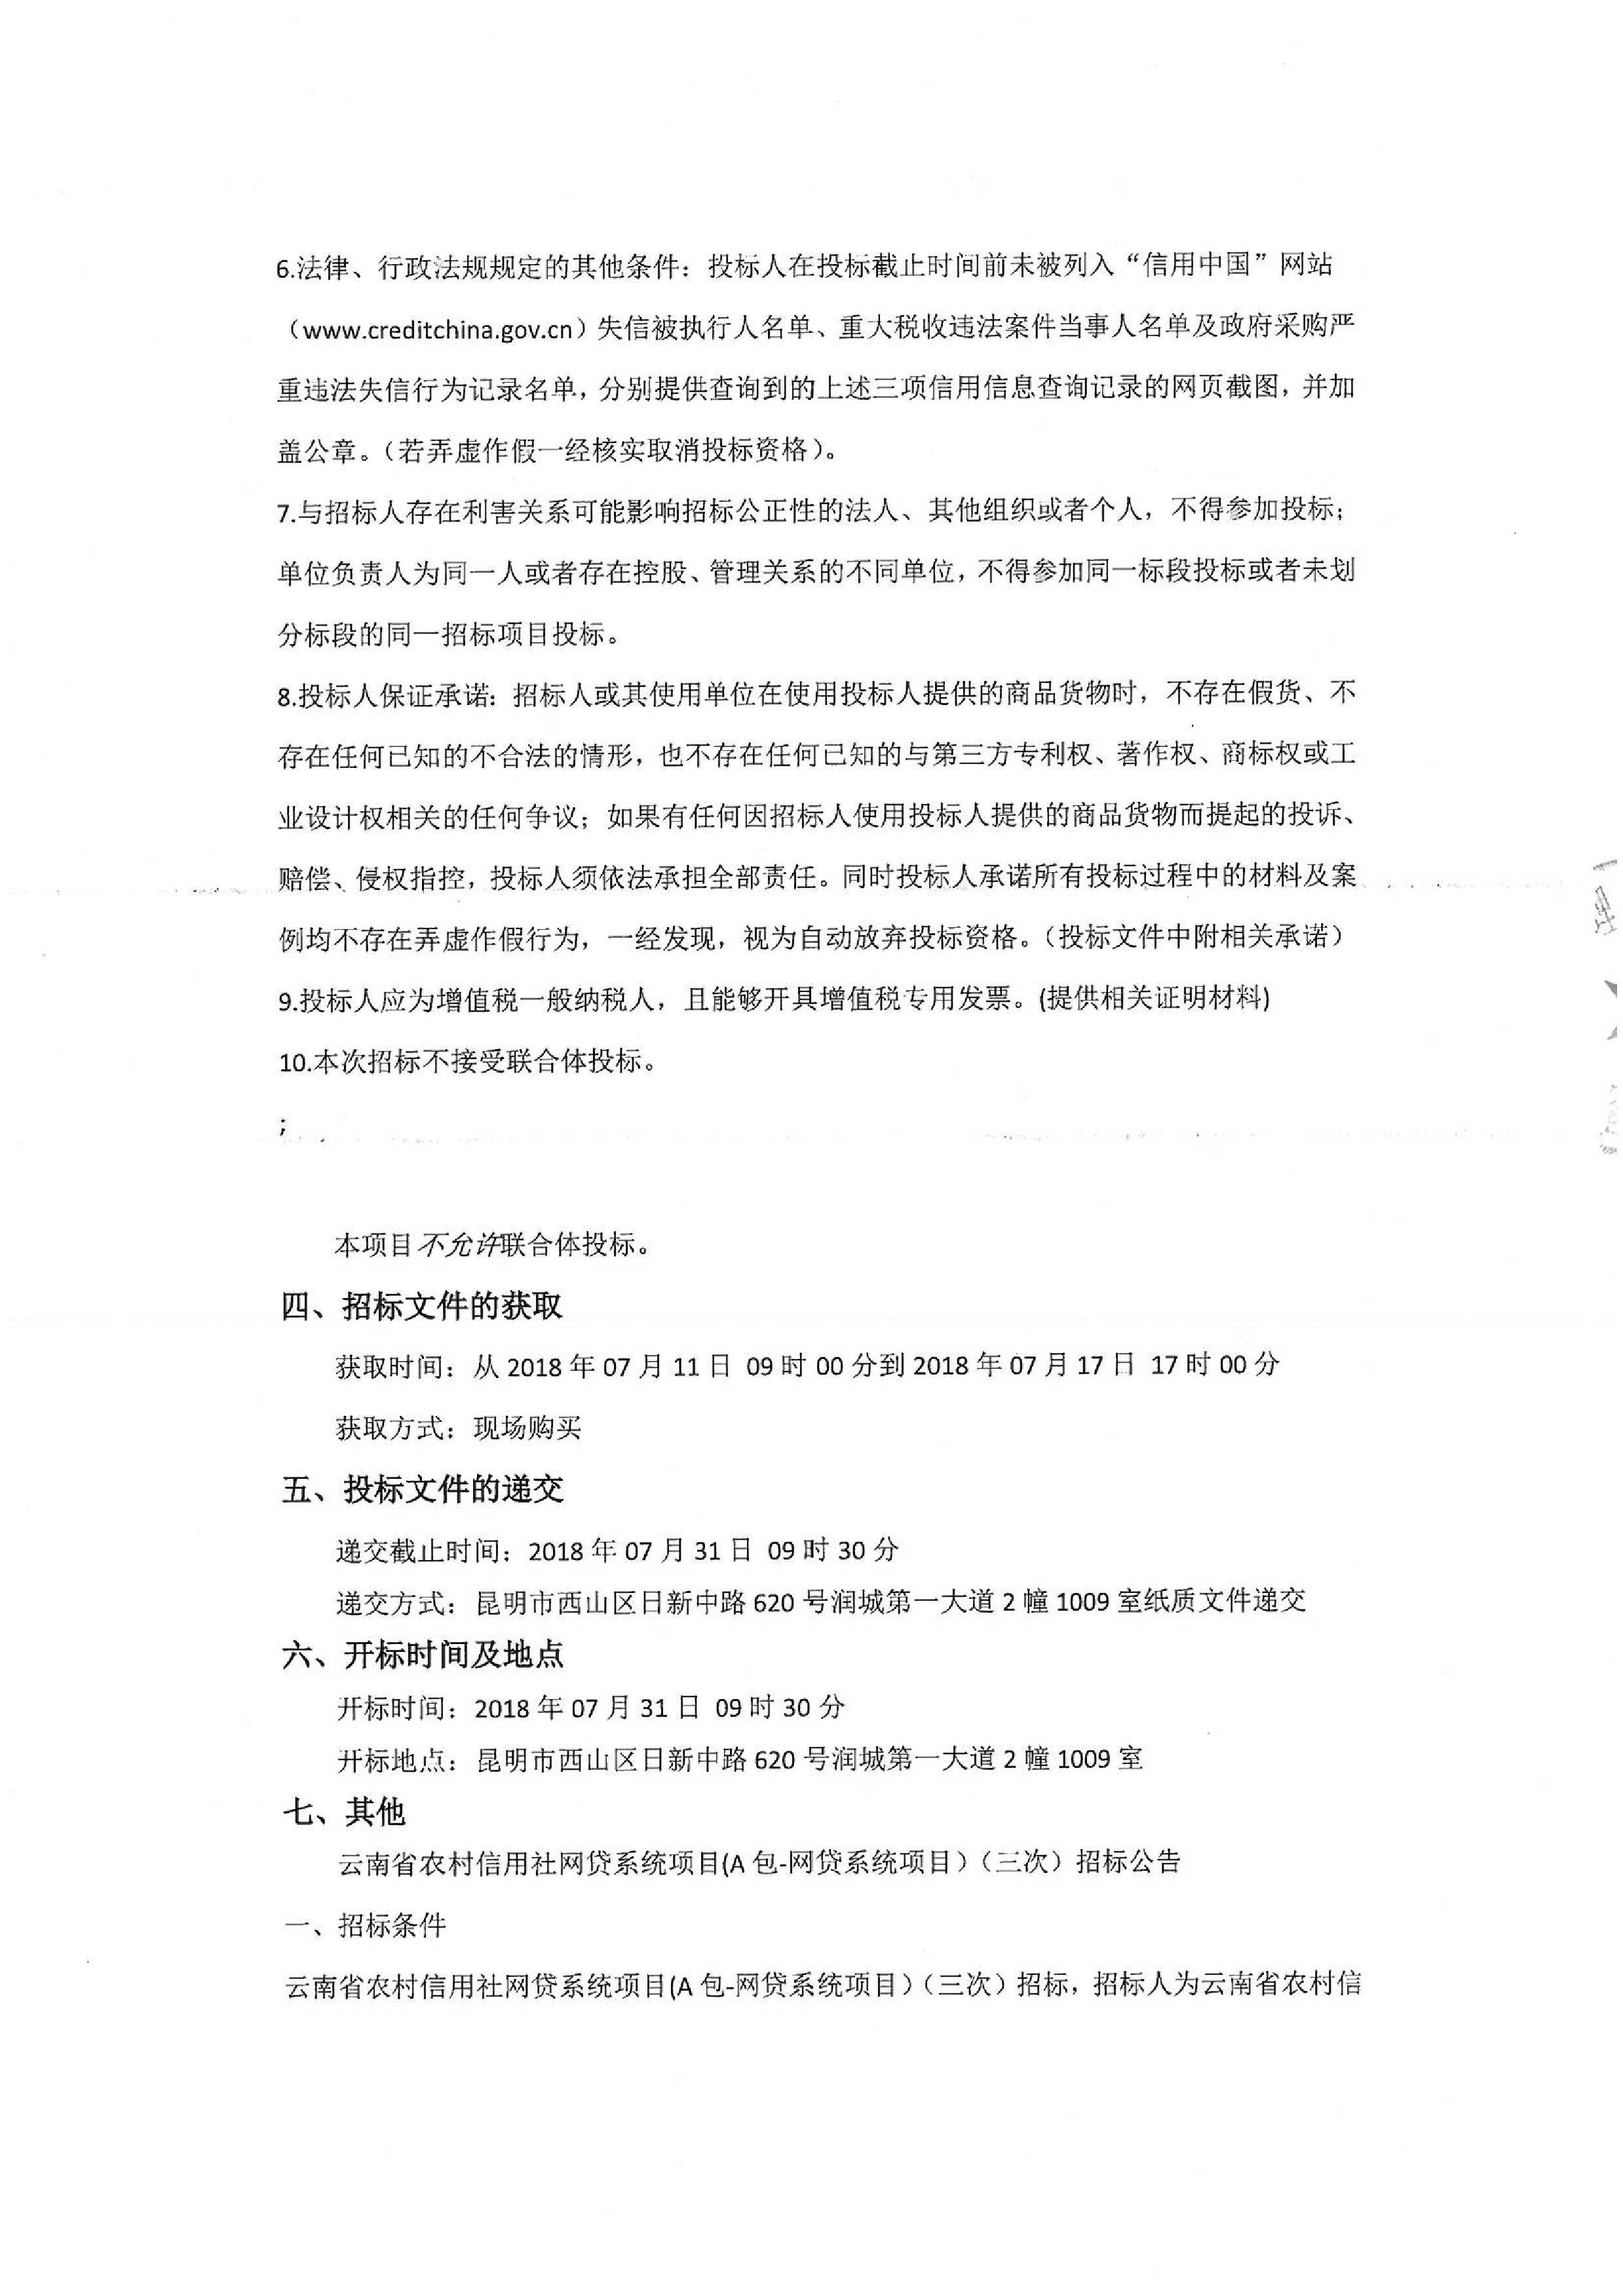 云南省农村信用社网贷系统项目(A包-网贷系统